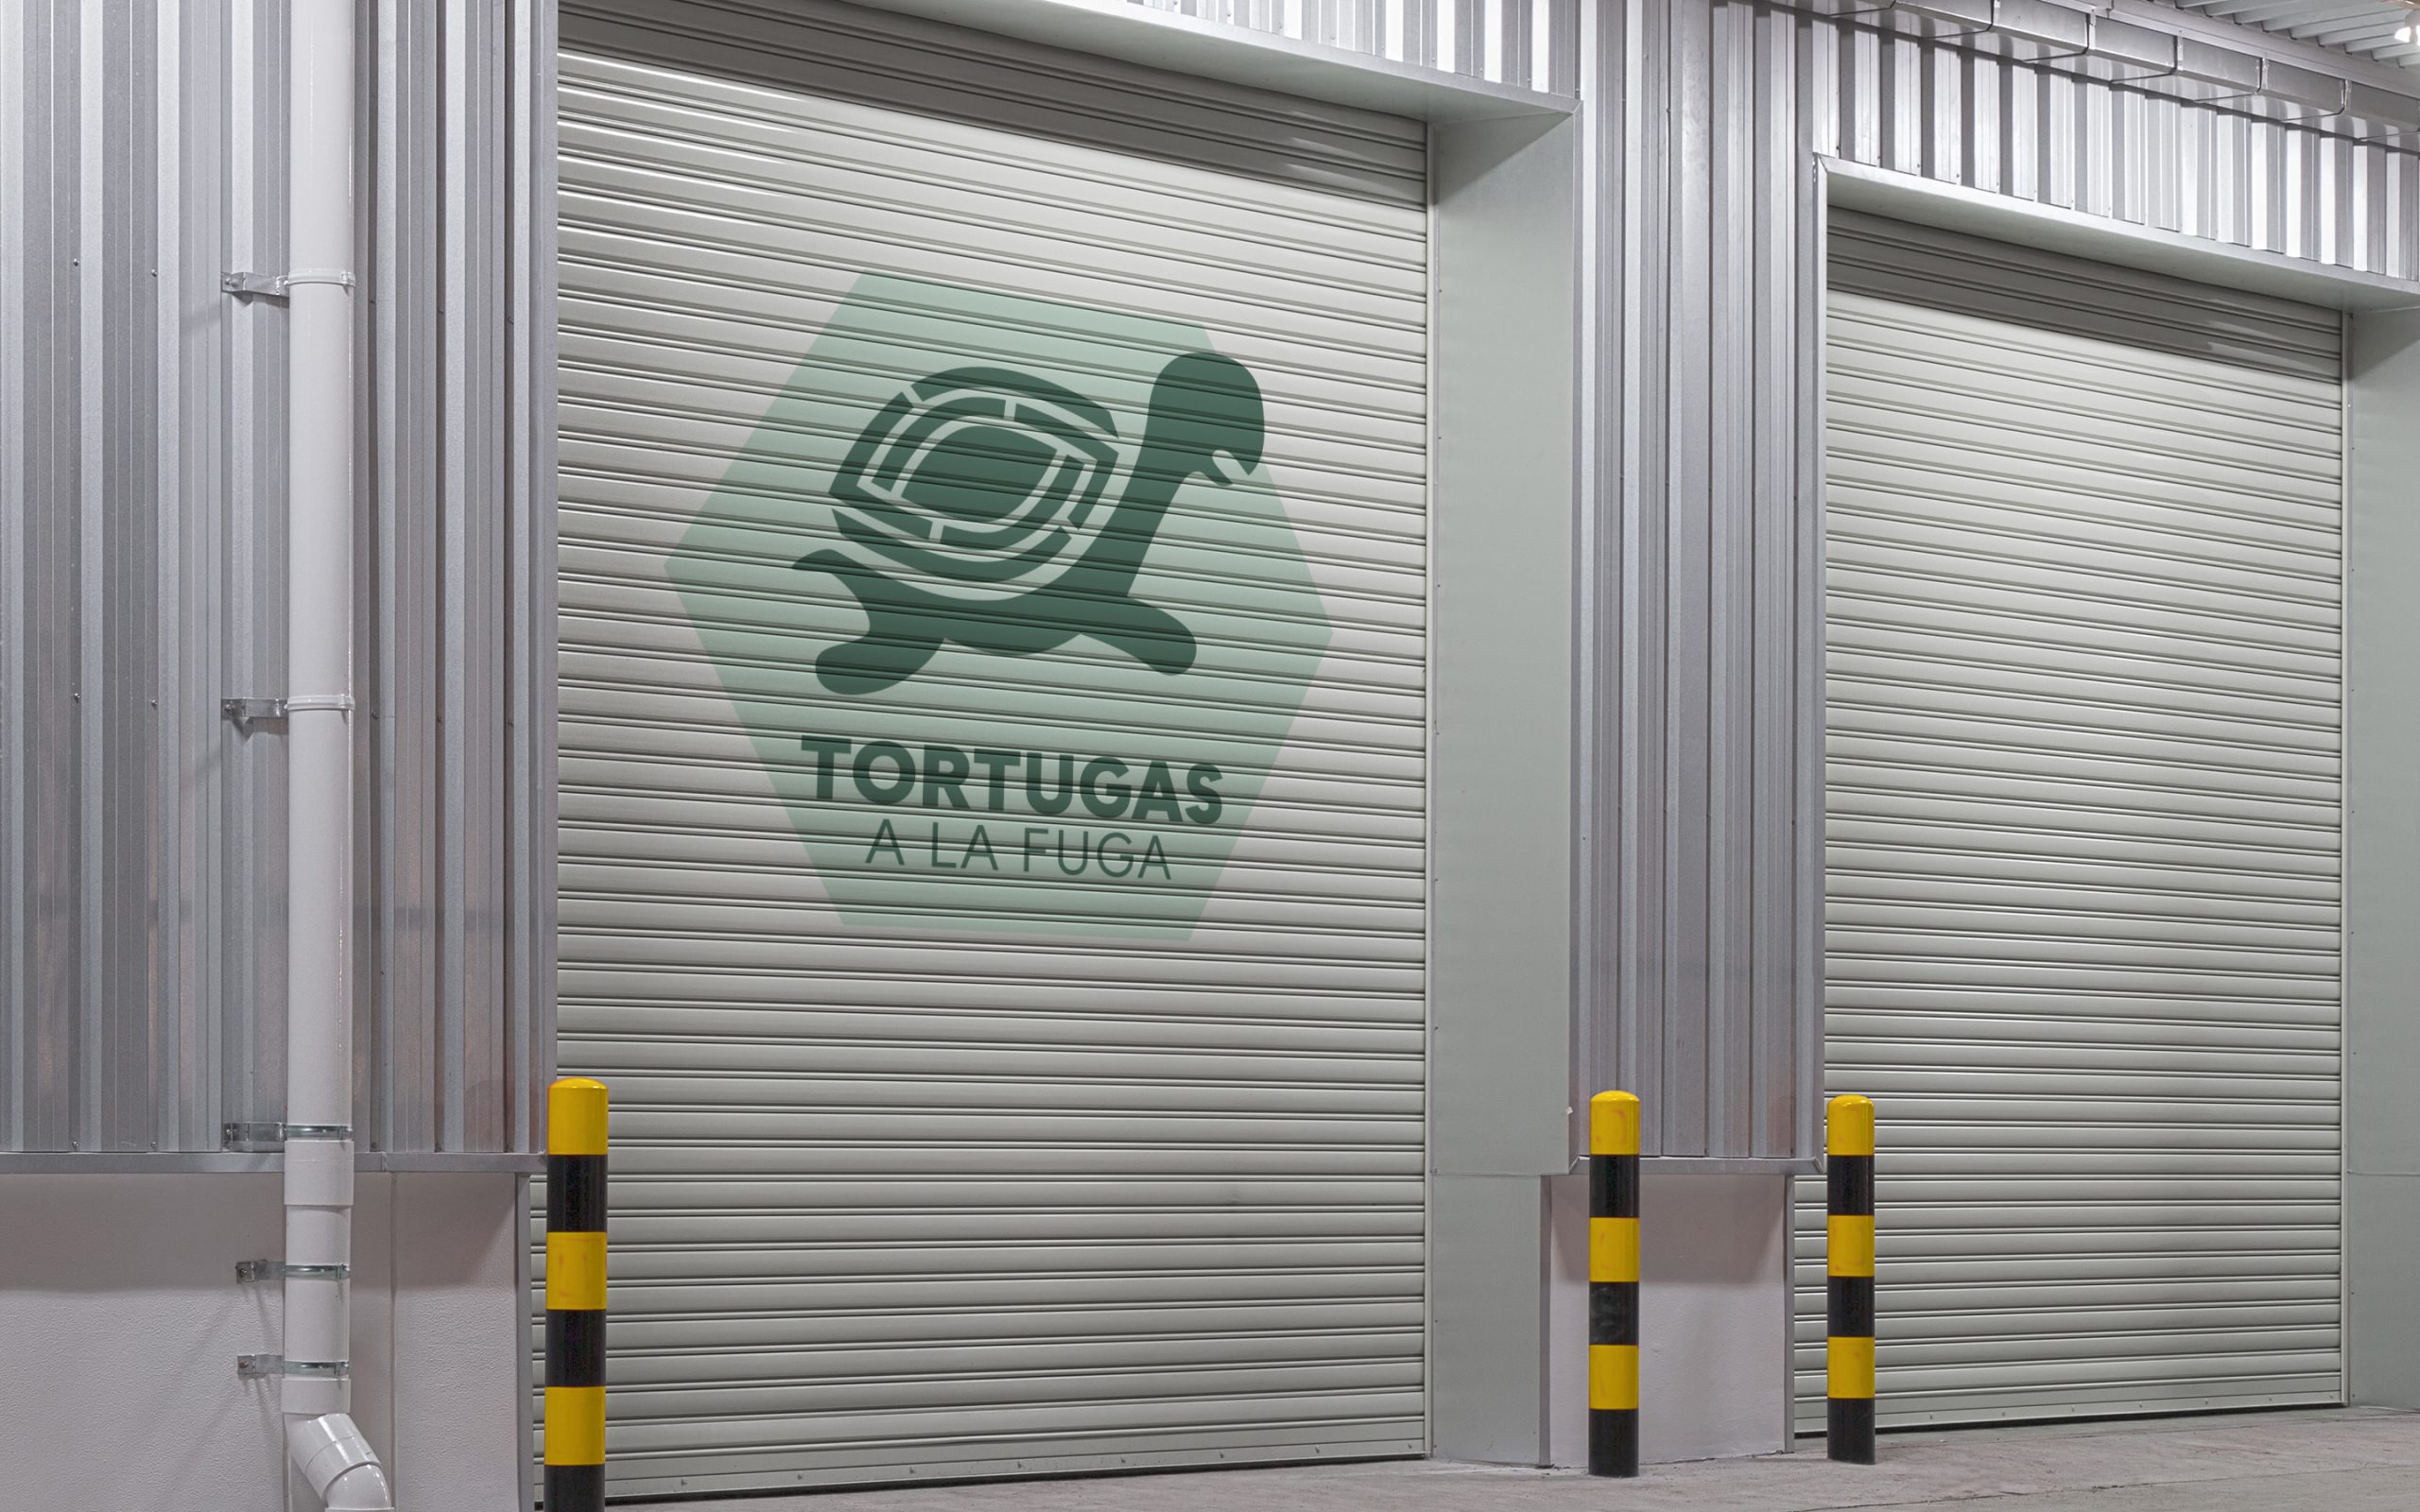 Diseño de Logotipo para el Escaperoom "Tortugas a la Fuga" en Alicante hecho por LyBe Creators